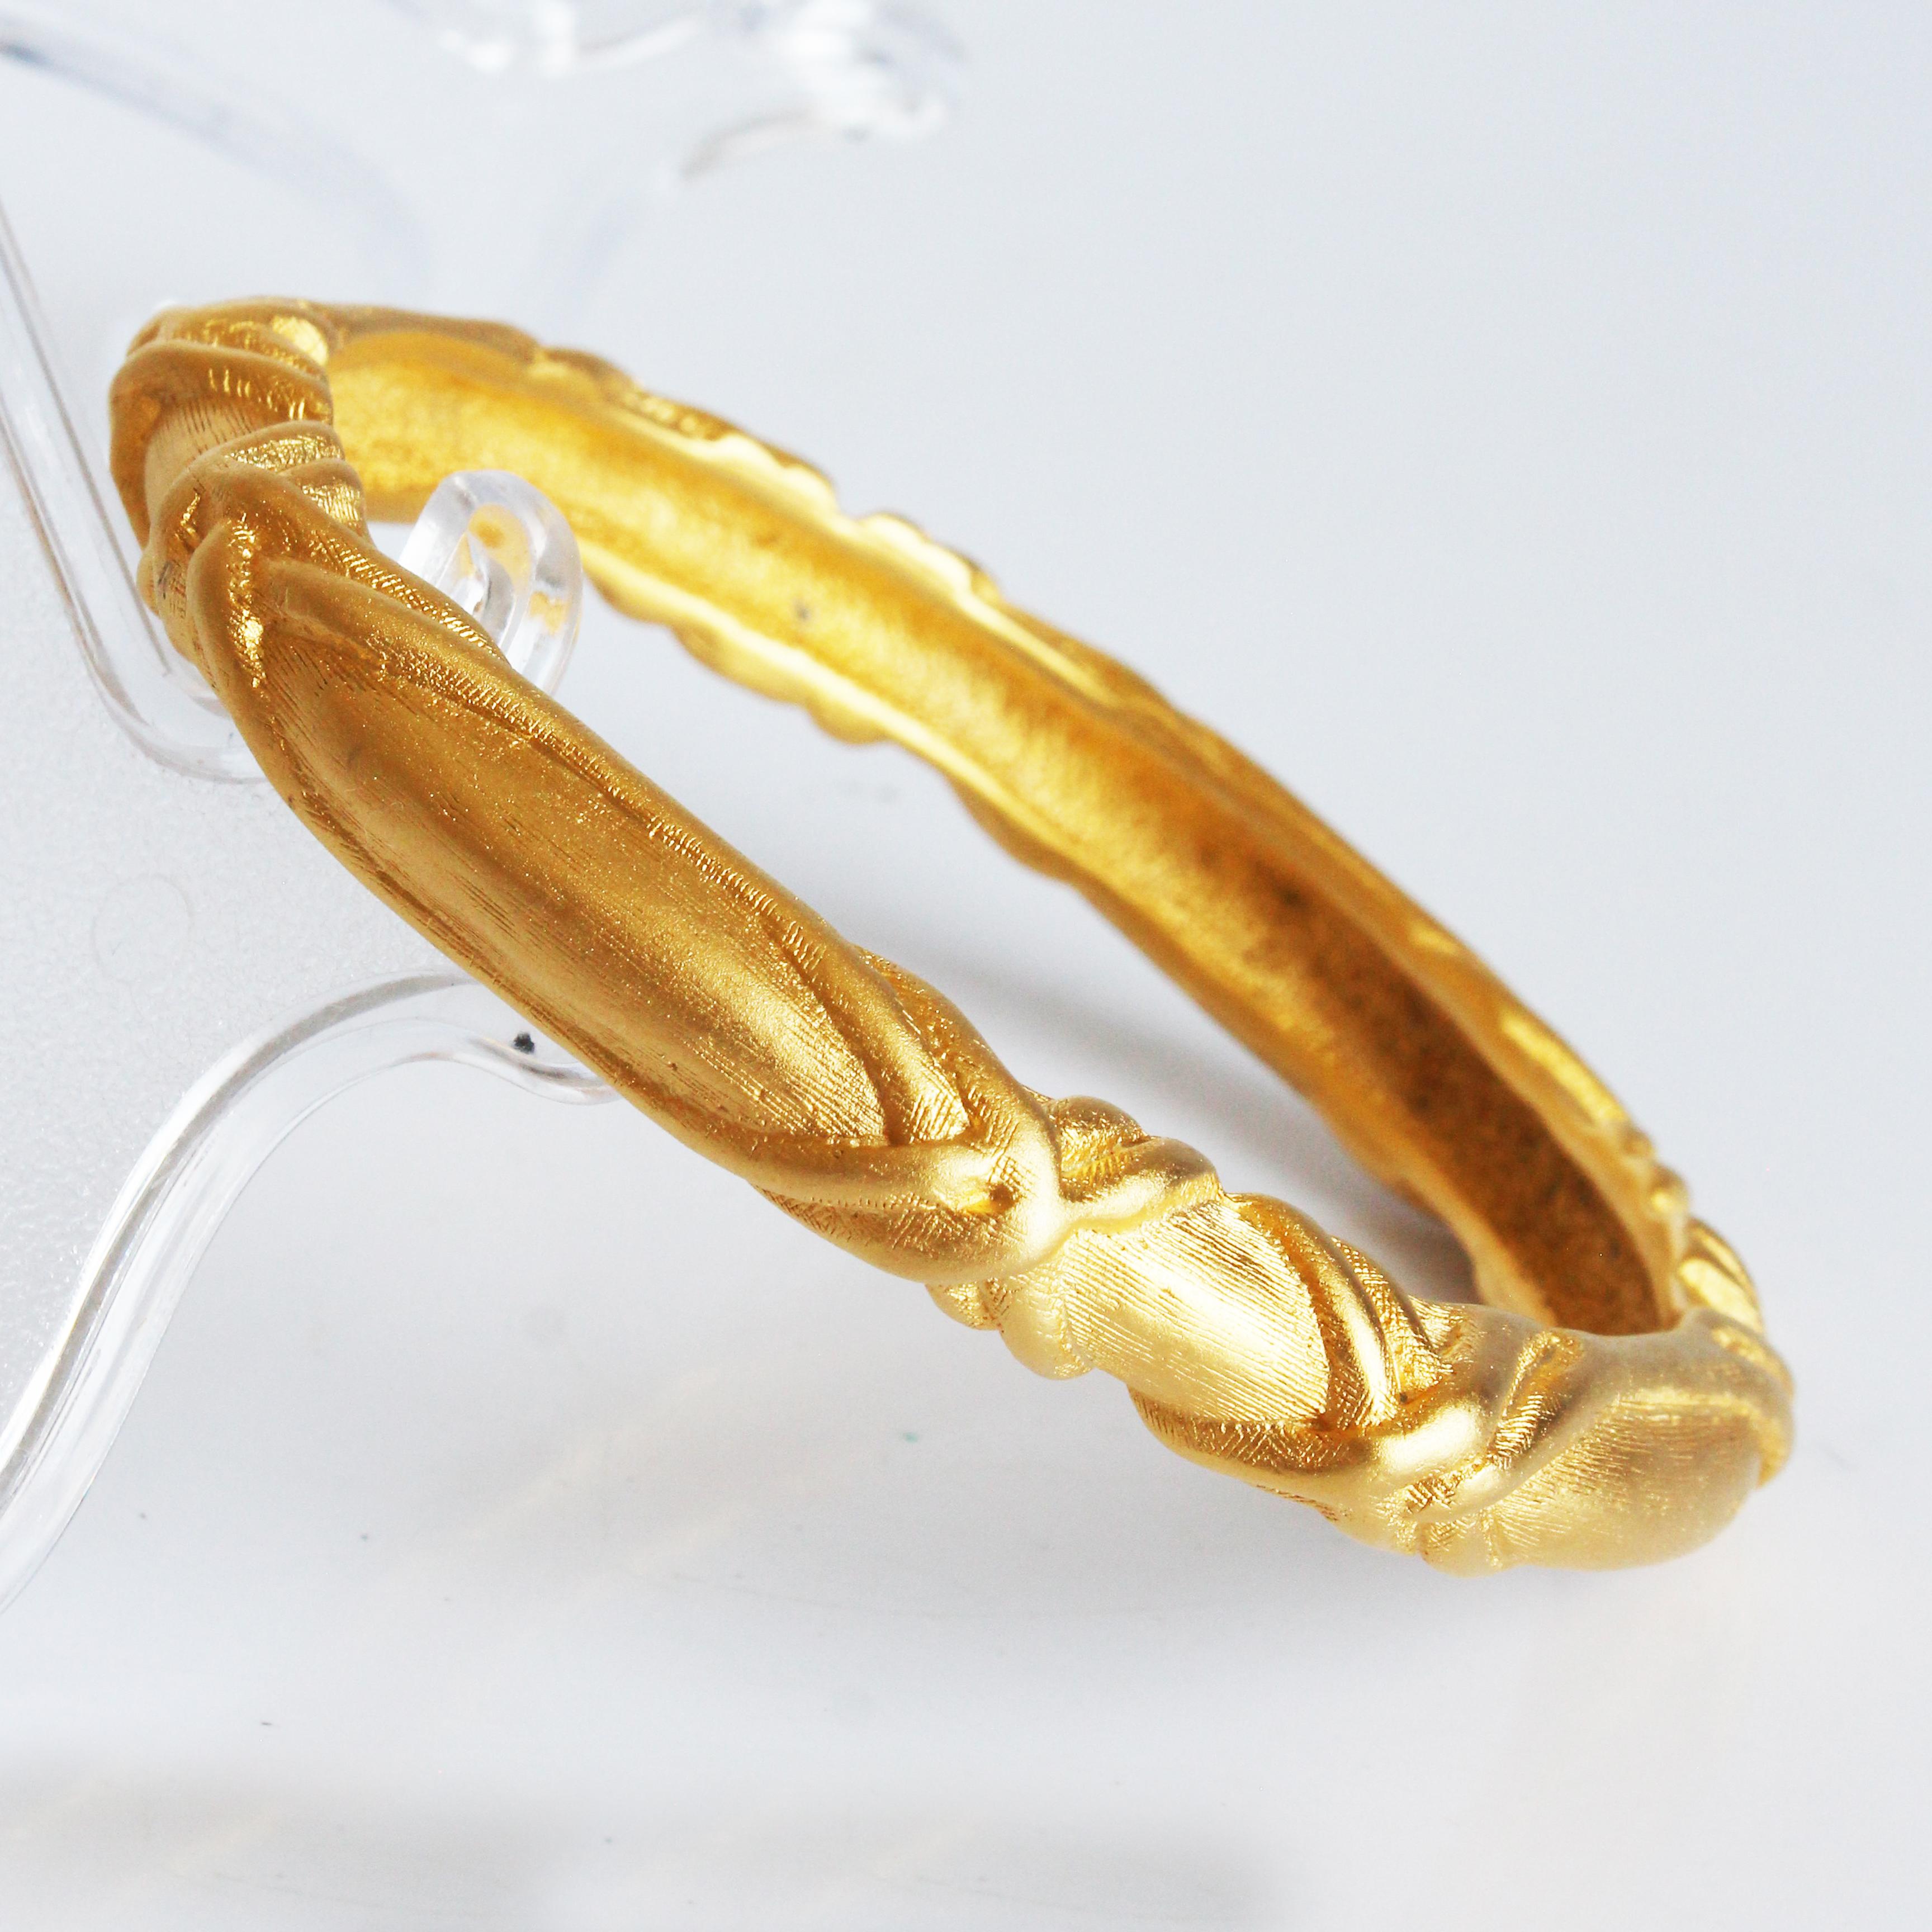 Gebrauchtes Givenchy-Armband im Vintage-Stil, wahrscheinlich aus den 80er Jahren.  Dieser Armreif aus goldenem Metall ist mit einem abstrakten Kreuzmuster versehen.  

Sieht alleine toll aus - oder kombinieren Sie ihn mit Ihren anderen